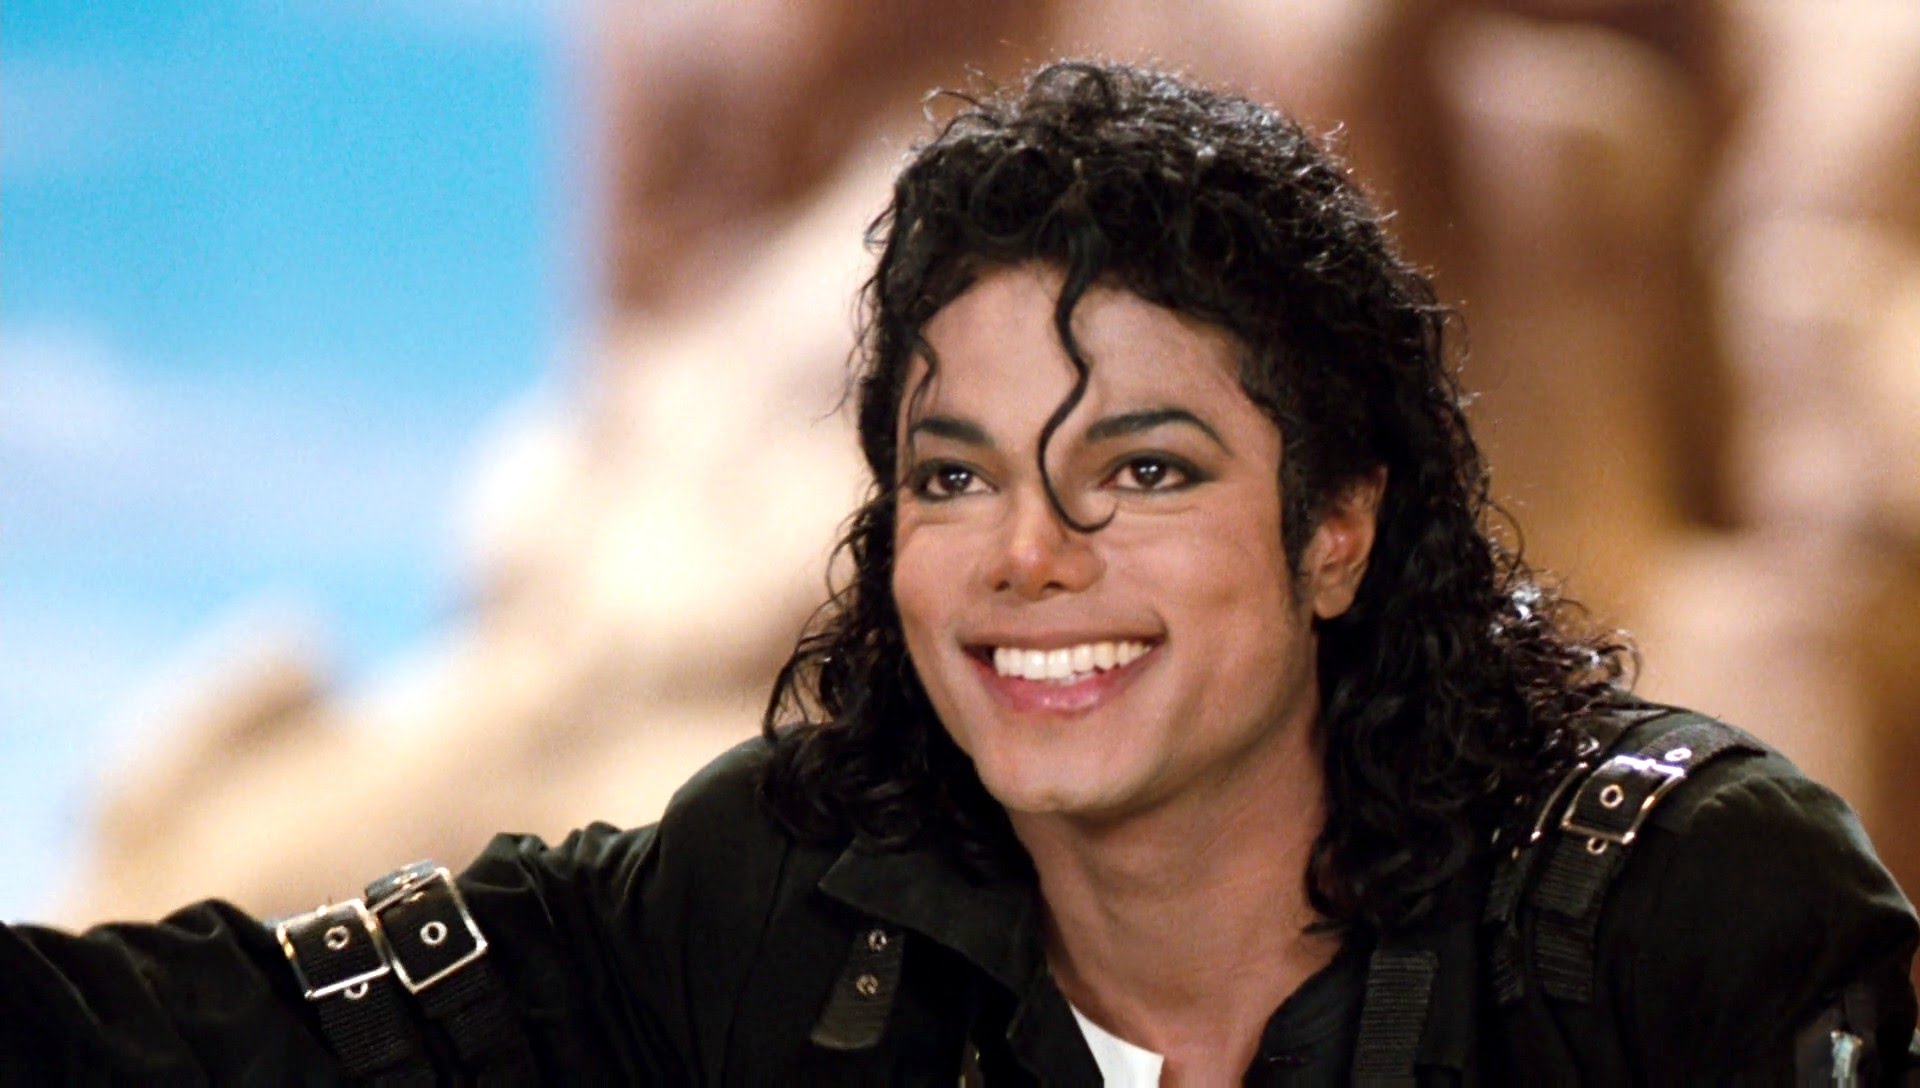  Biografía de Michael Jackson